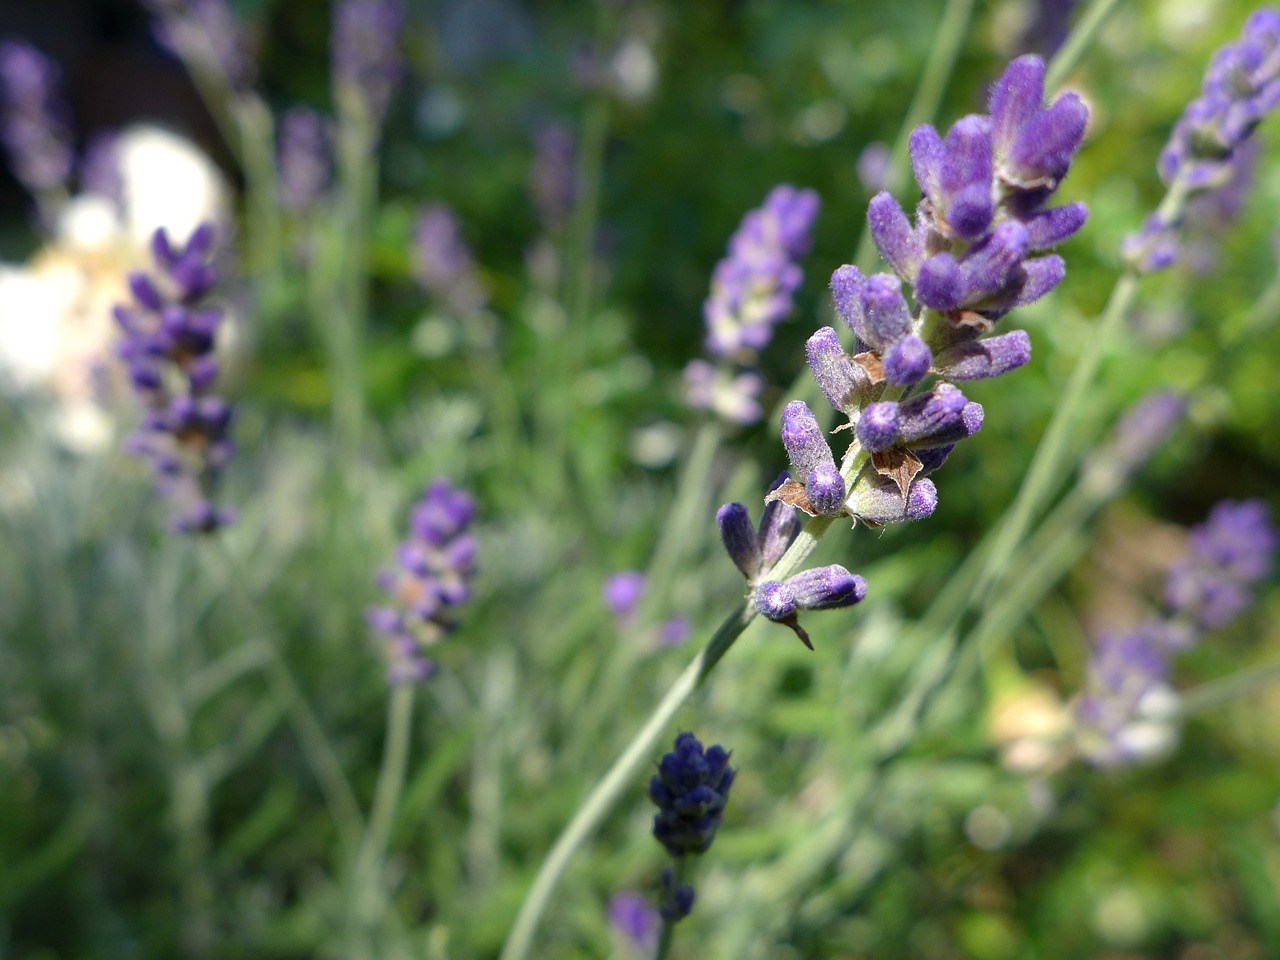 Munstead lavender in the garden.